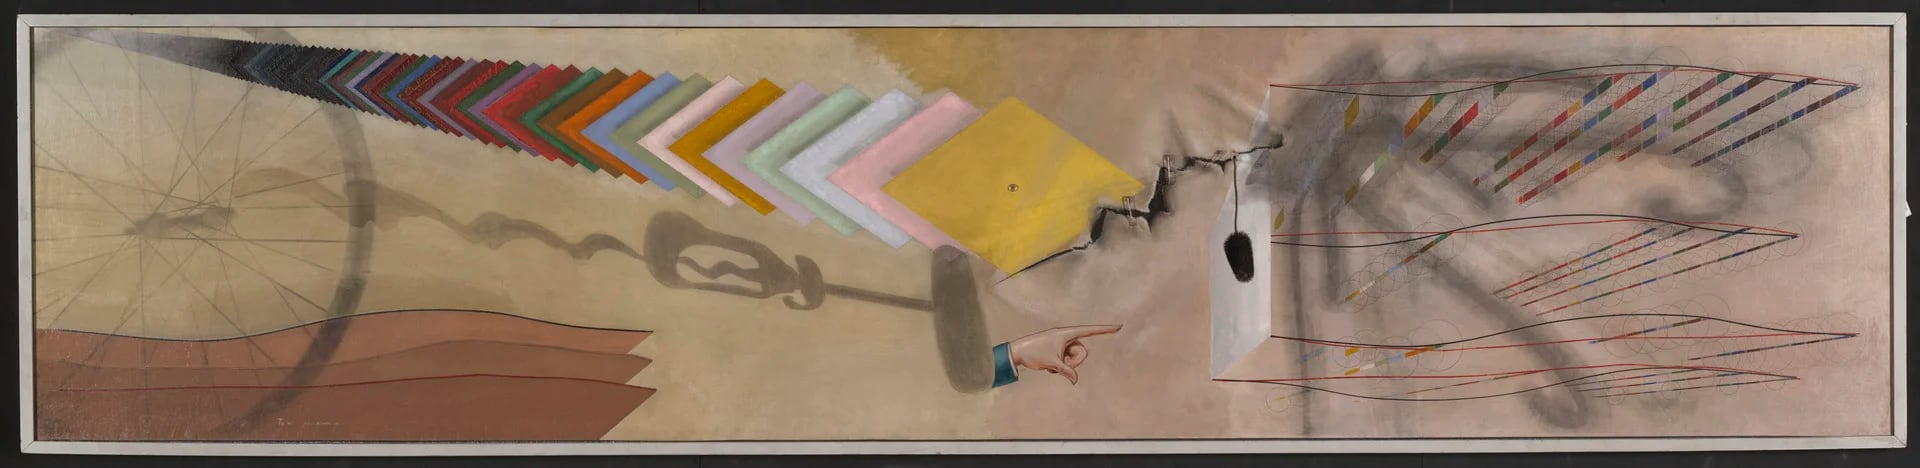 El último cuadro que pintó Duchamp en su vida se llama "Tu m'", que en español podríamos traducir como "Me rompés las p'". Katherine Dreier lo compró y lo colgó en su casa arriba de tu biblioteca.